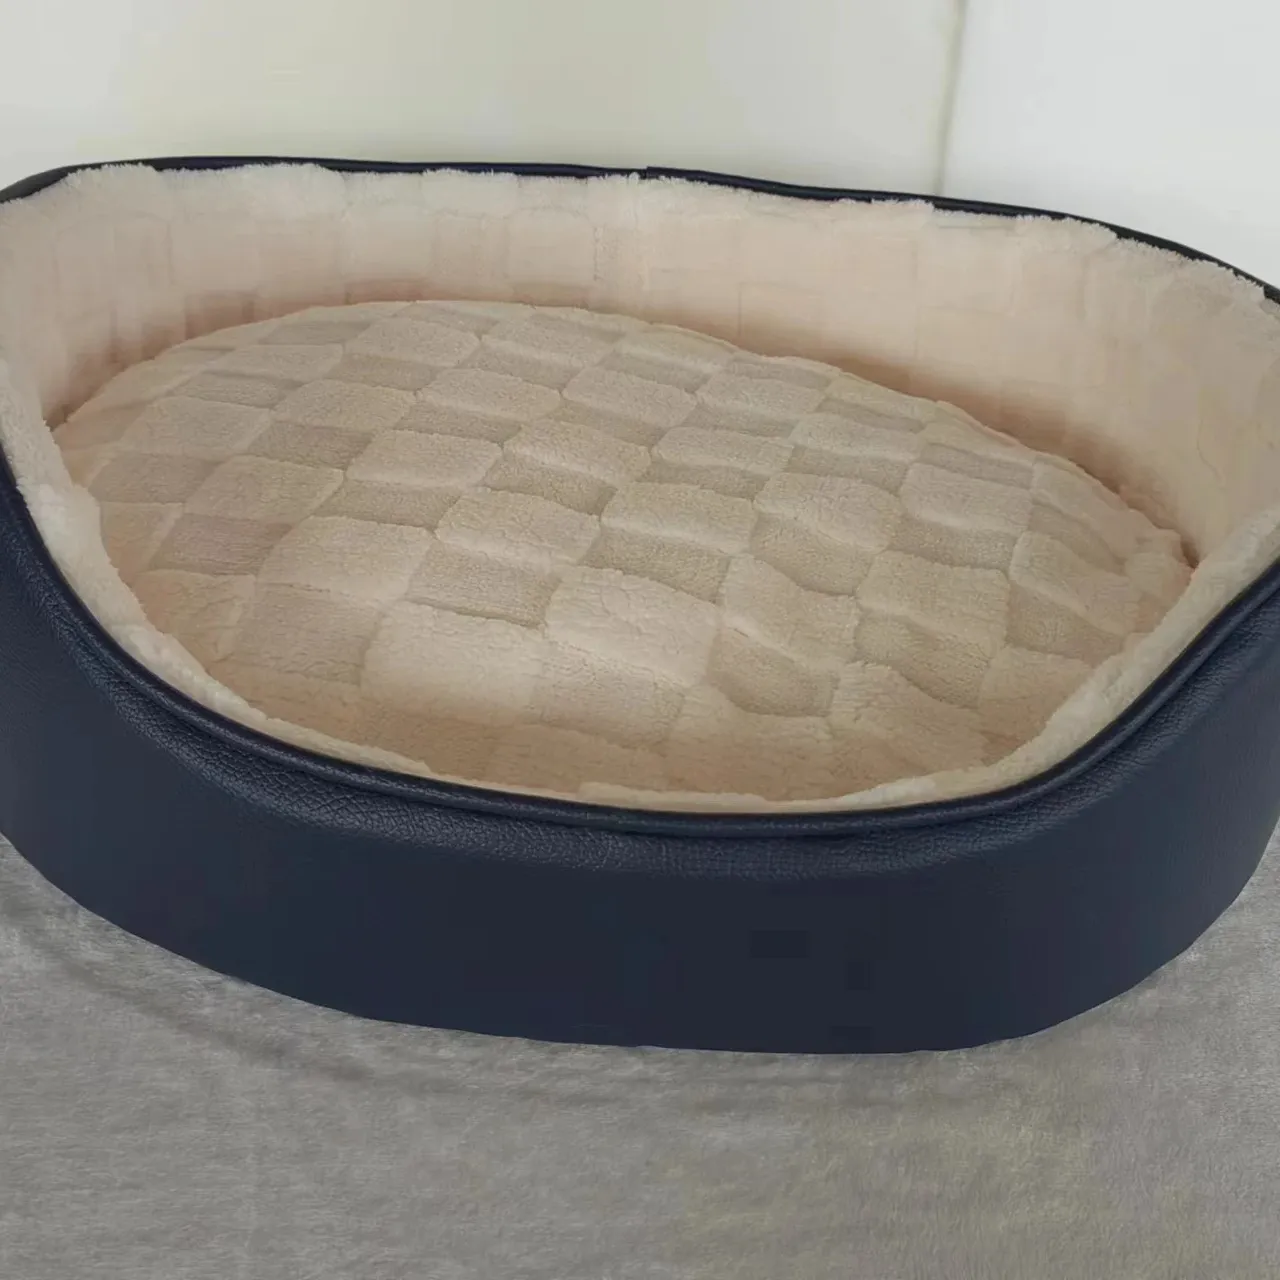 Cama de cachorro quente, cama redonda macia e confortável para animais de estimação, cama redonda resistente a sujeira para gatos, durável, couro sintético, novidade prática